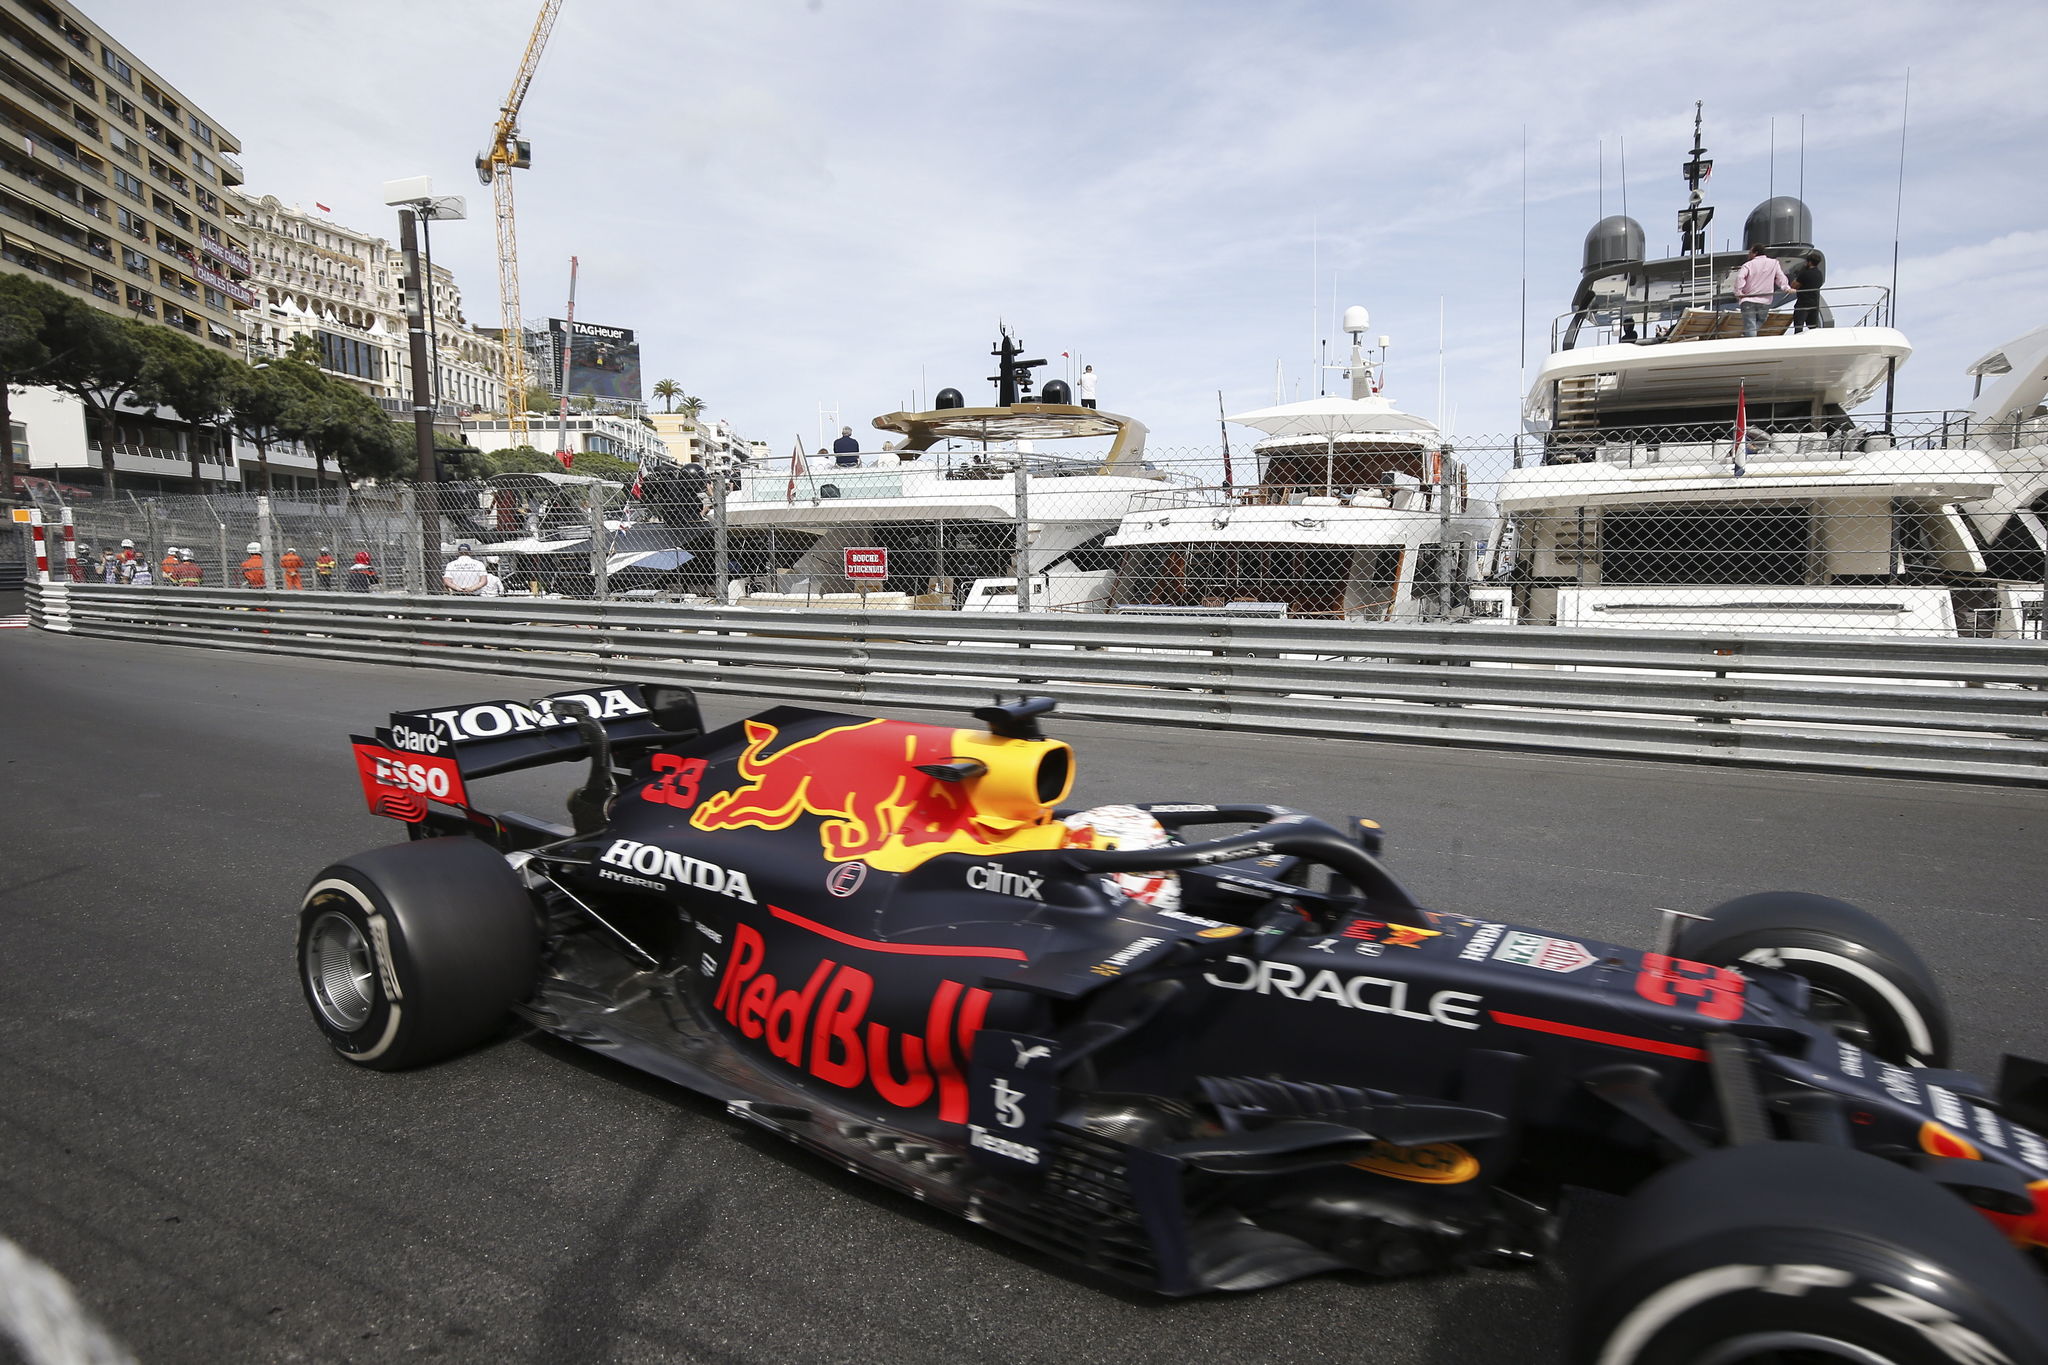 F1 Monaco GP 2021: Max Verstappen wins Formula 1's Monte Carlo Grand Prix and Championship standings